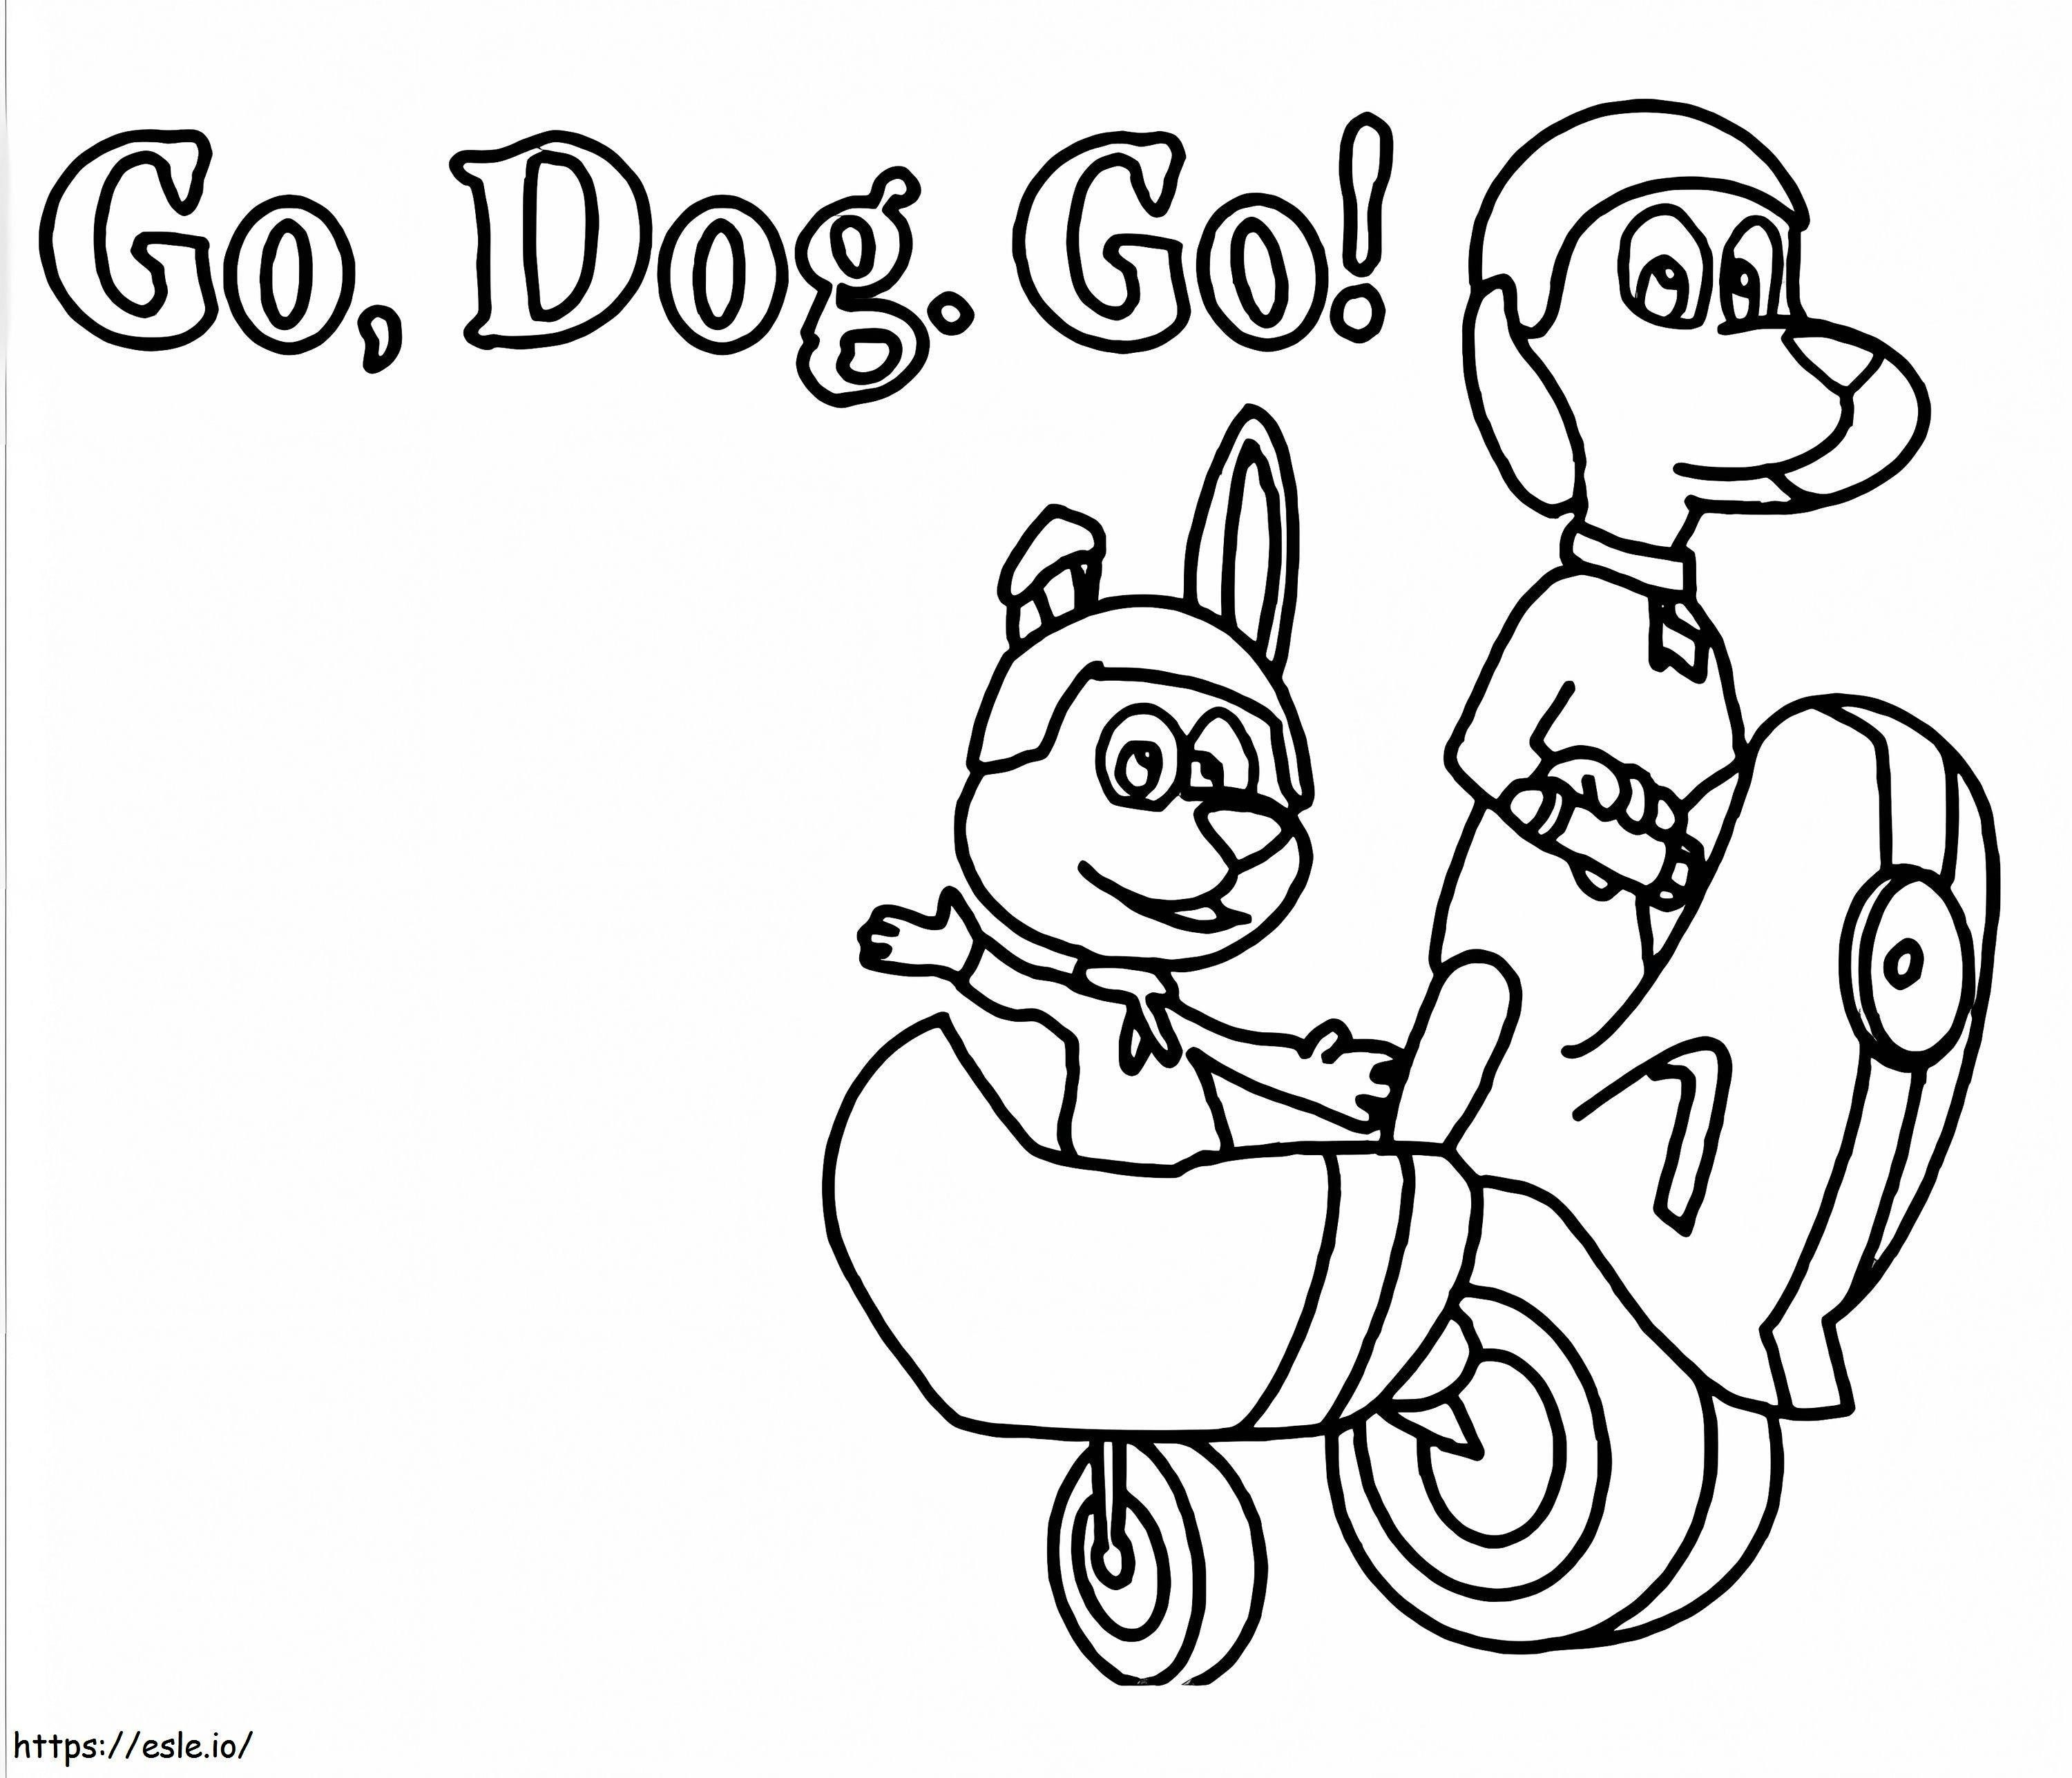 Go Dog Go 3 ausmalbilder